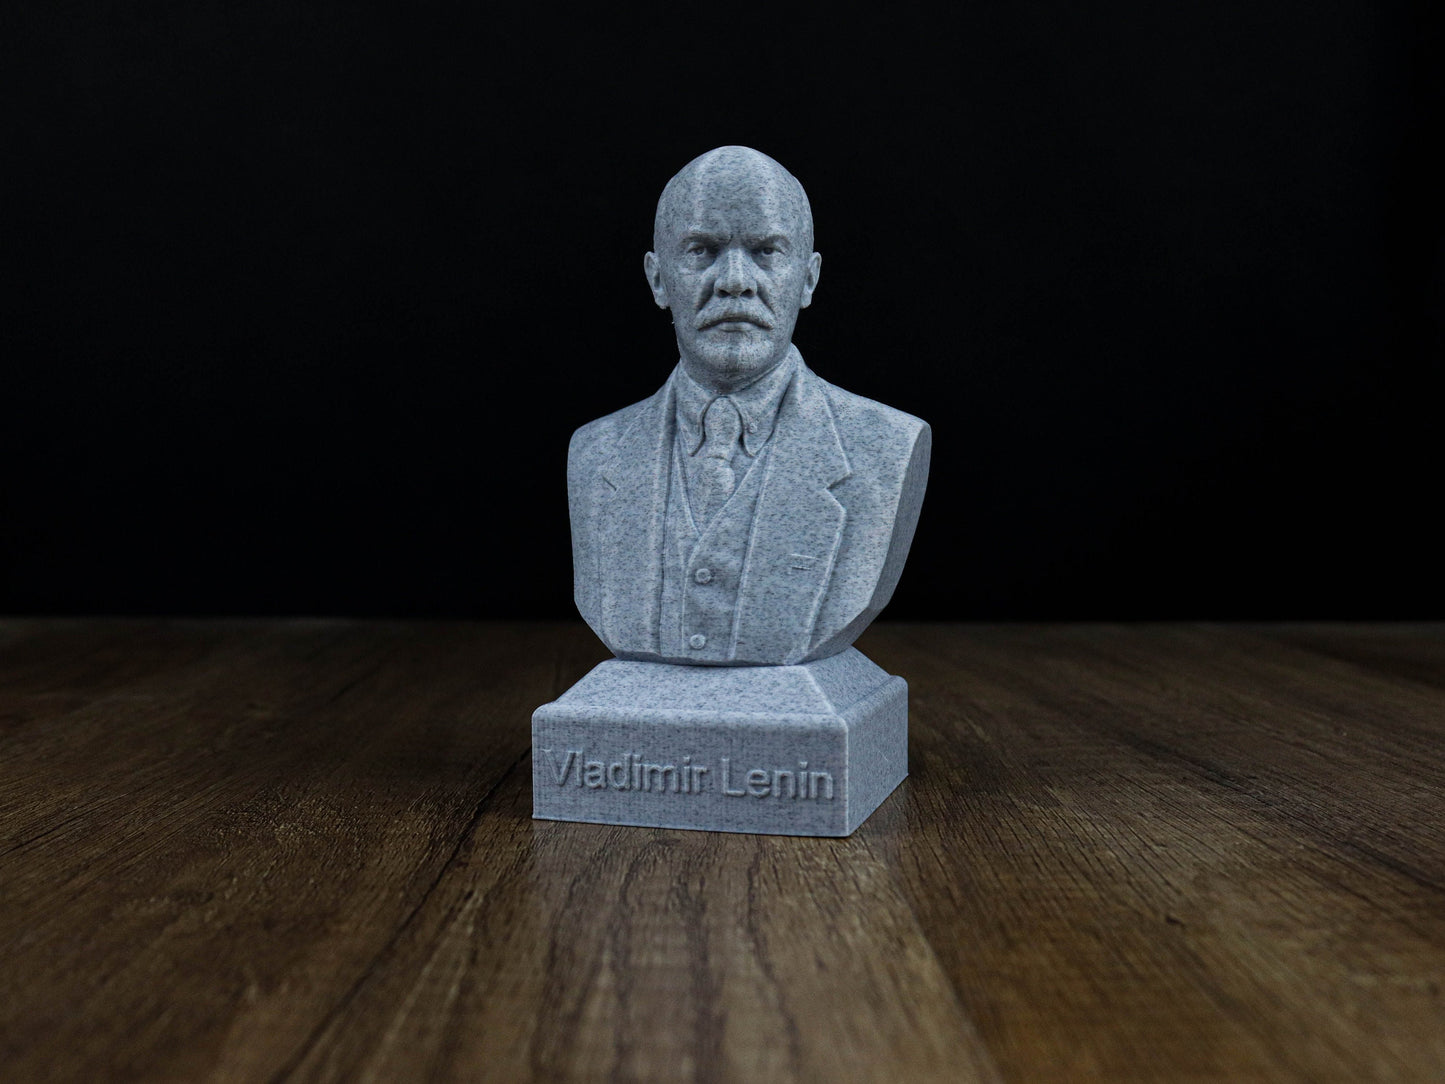 Vladimir Lenin Bust, Russian Revolutionary